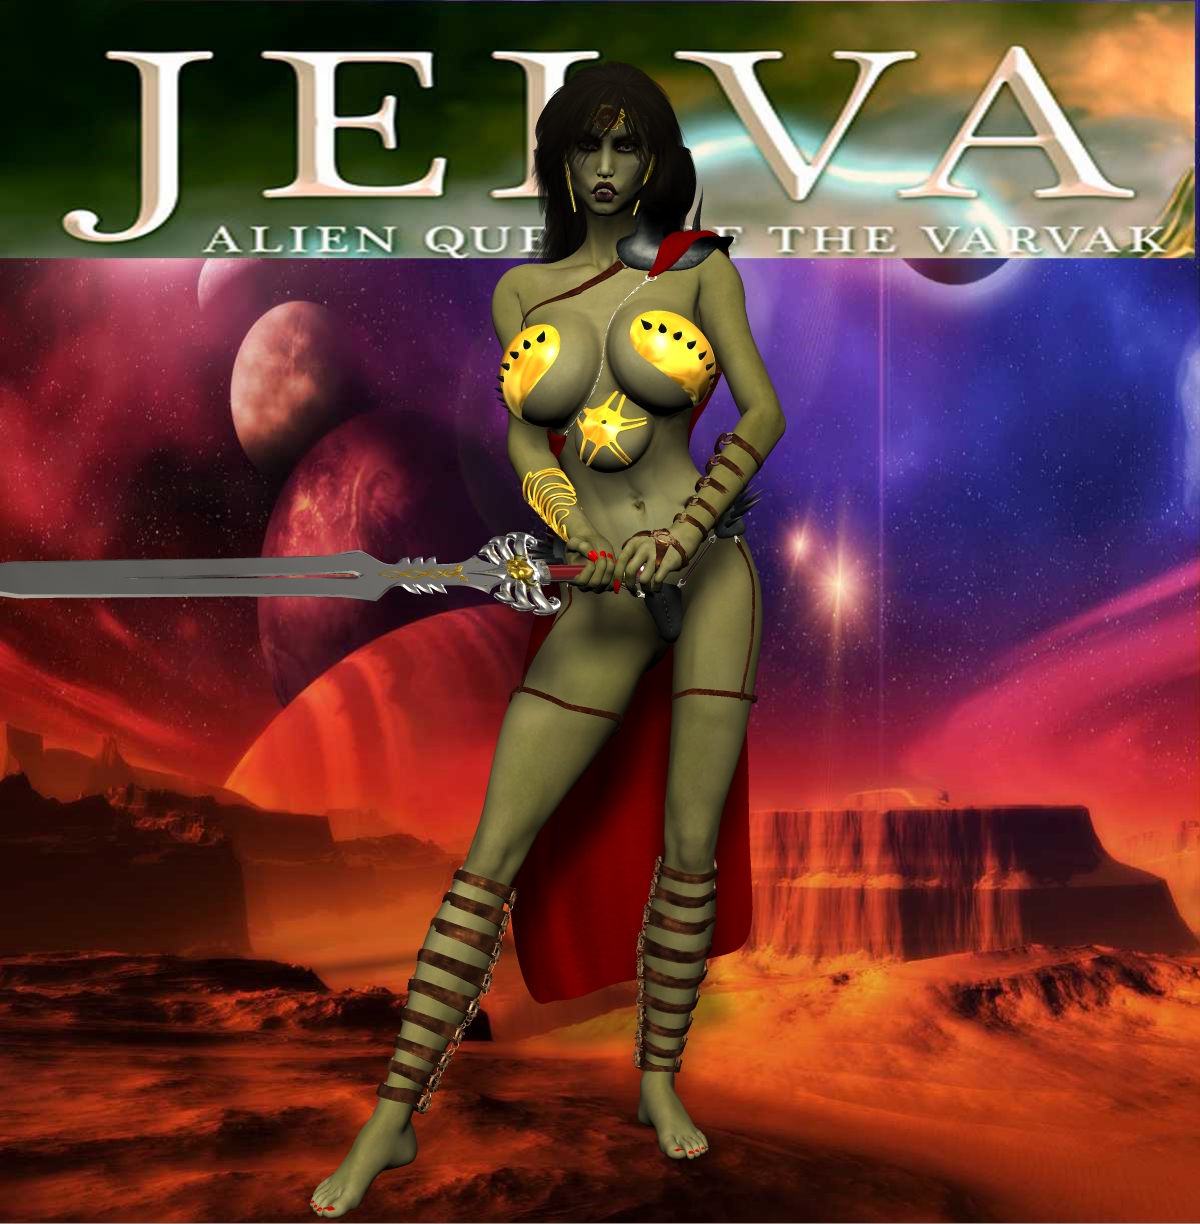 Alien Queen Porn - Jelva, Alien Queen of the Varvak